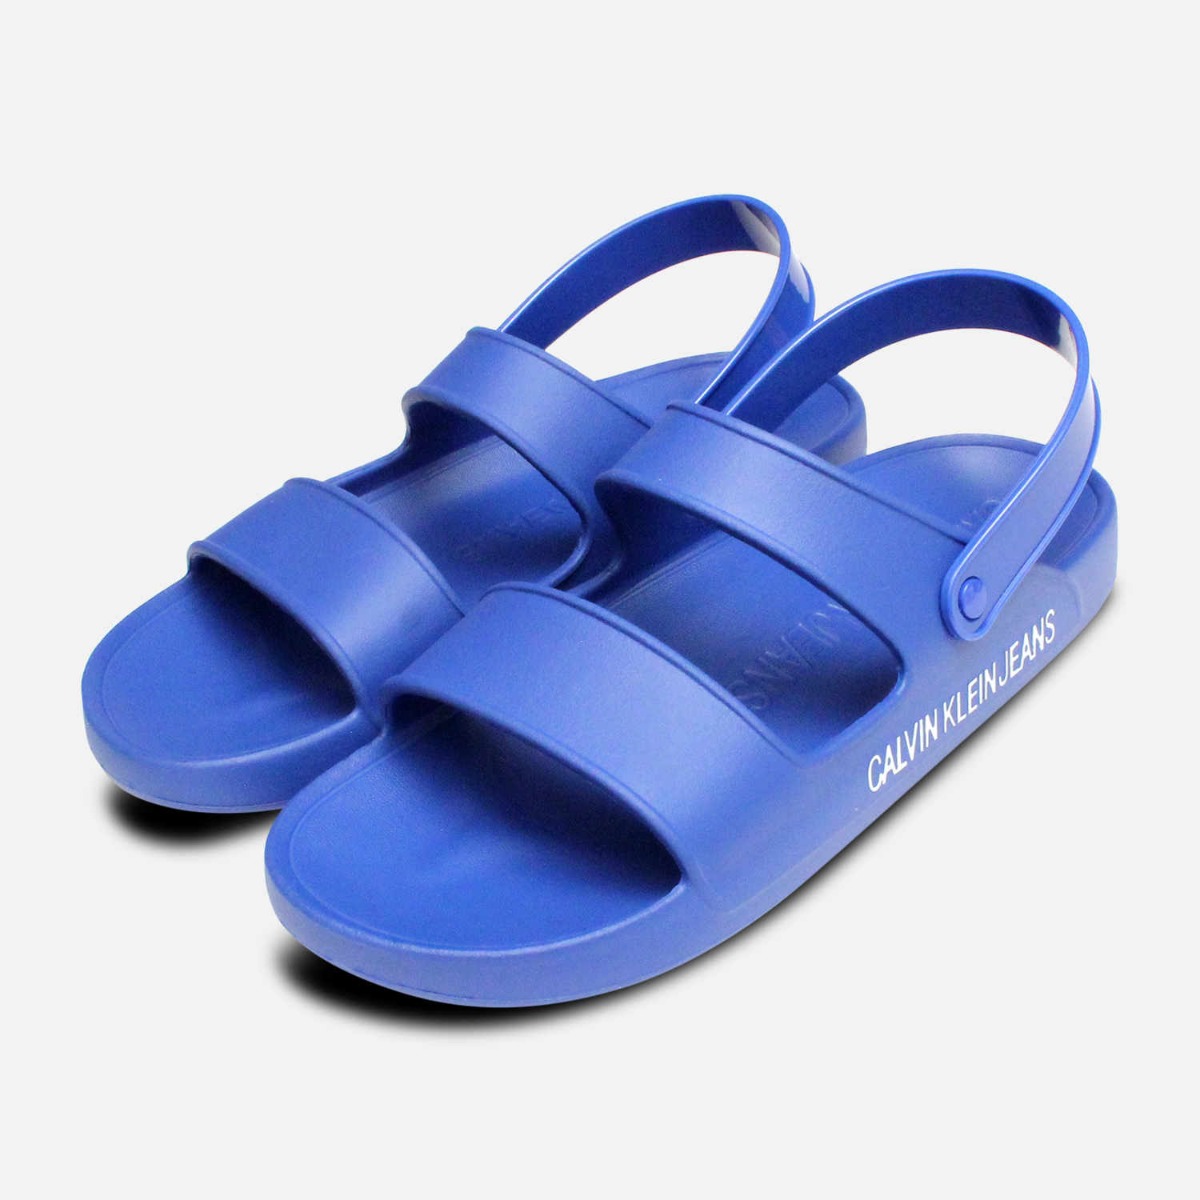 rubber sandals